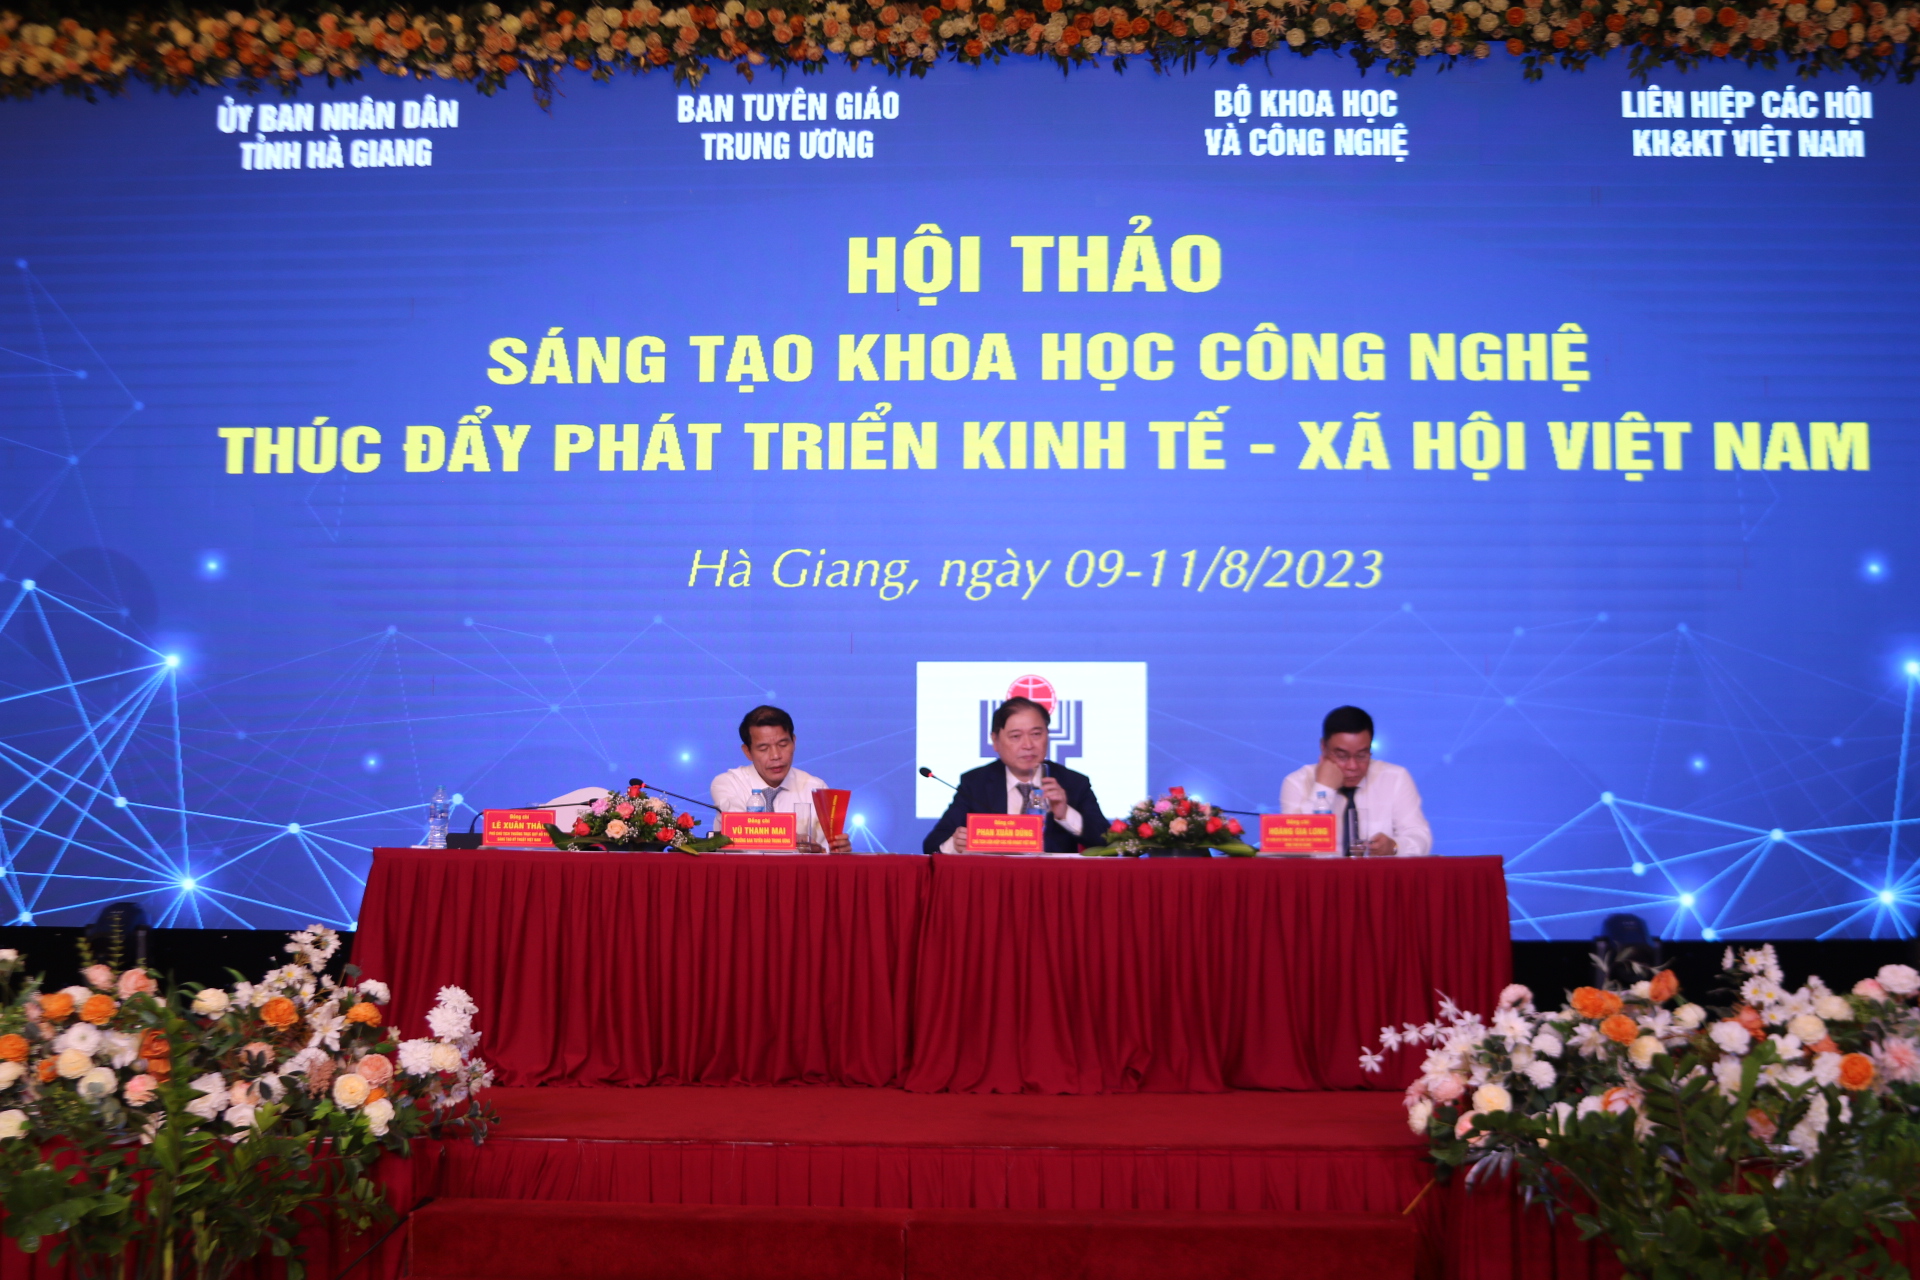 Sáng tạo khoa học công nghệ thúc đẩy phát triển kinh tế - xã hội Việt Nam - Ảnh 1.